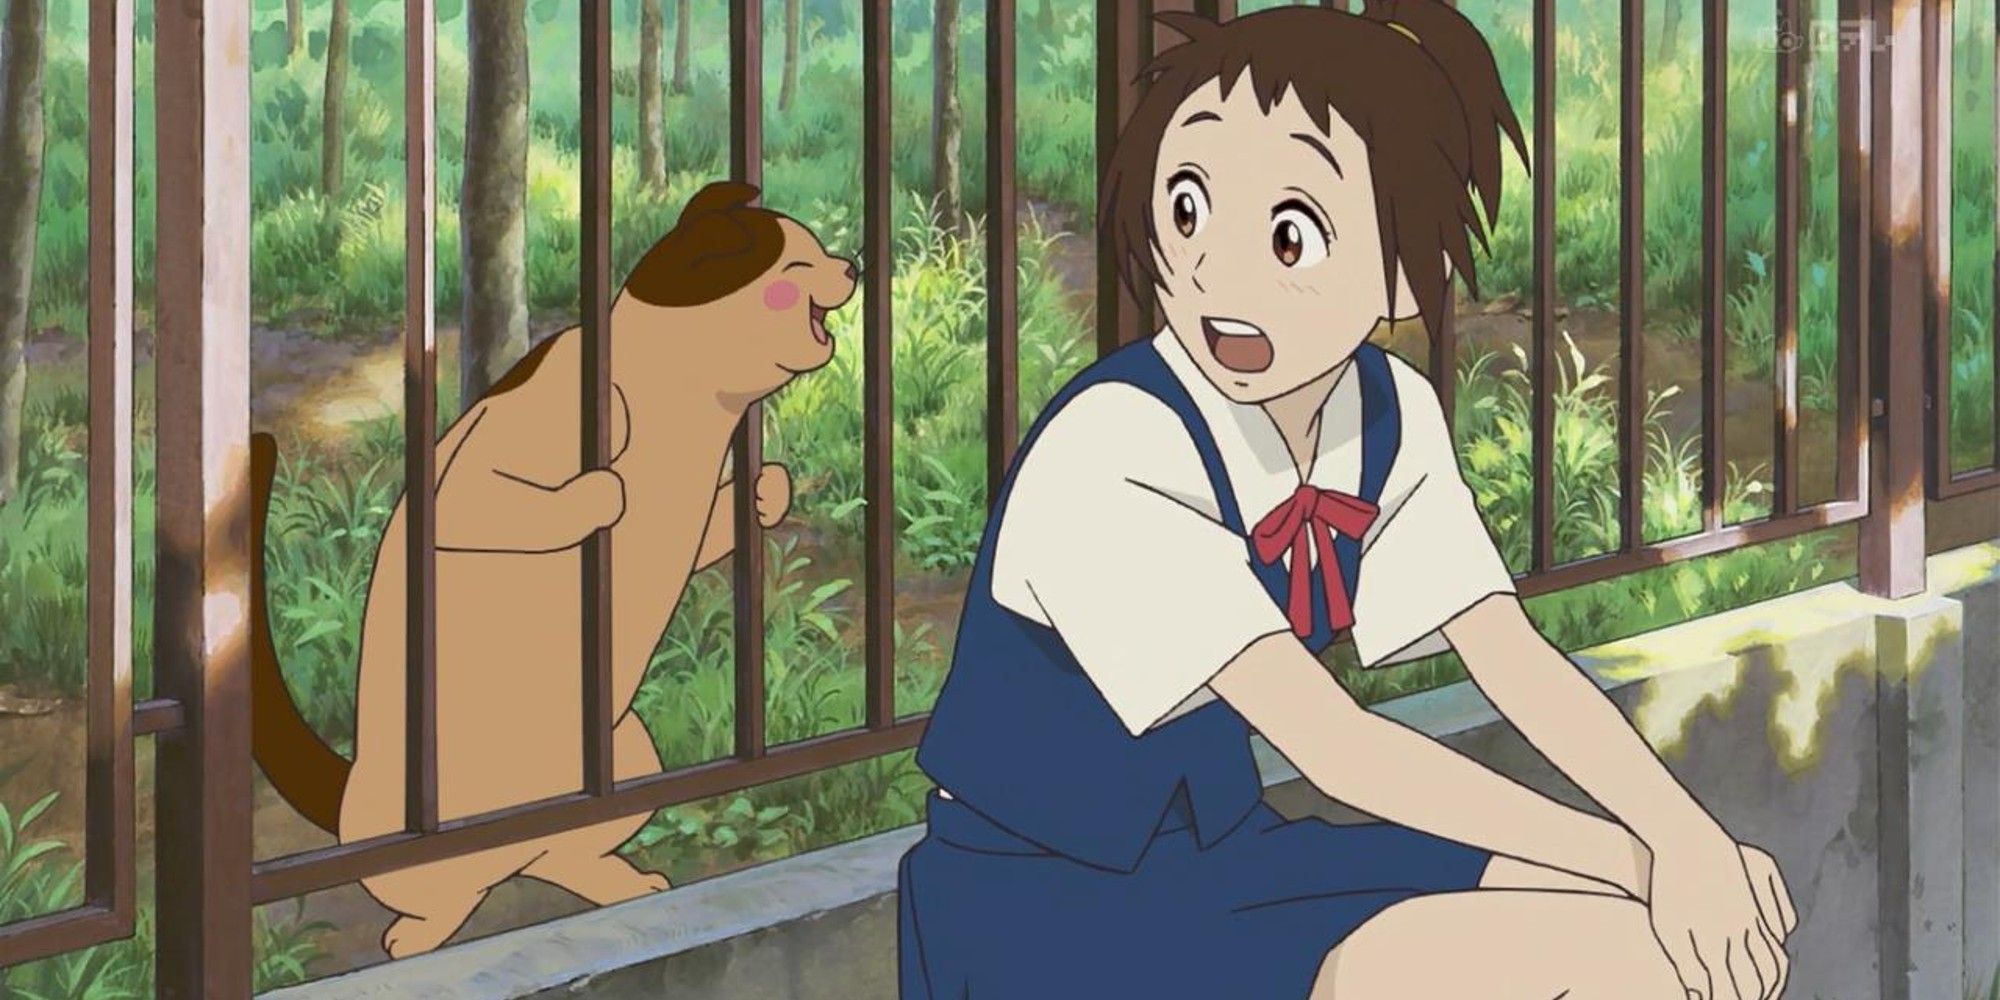 Ghibli: лучшие фильмы по книгам и манге, рейтинг